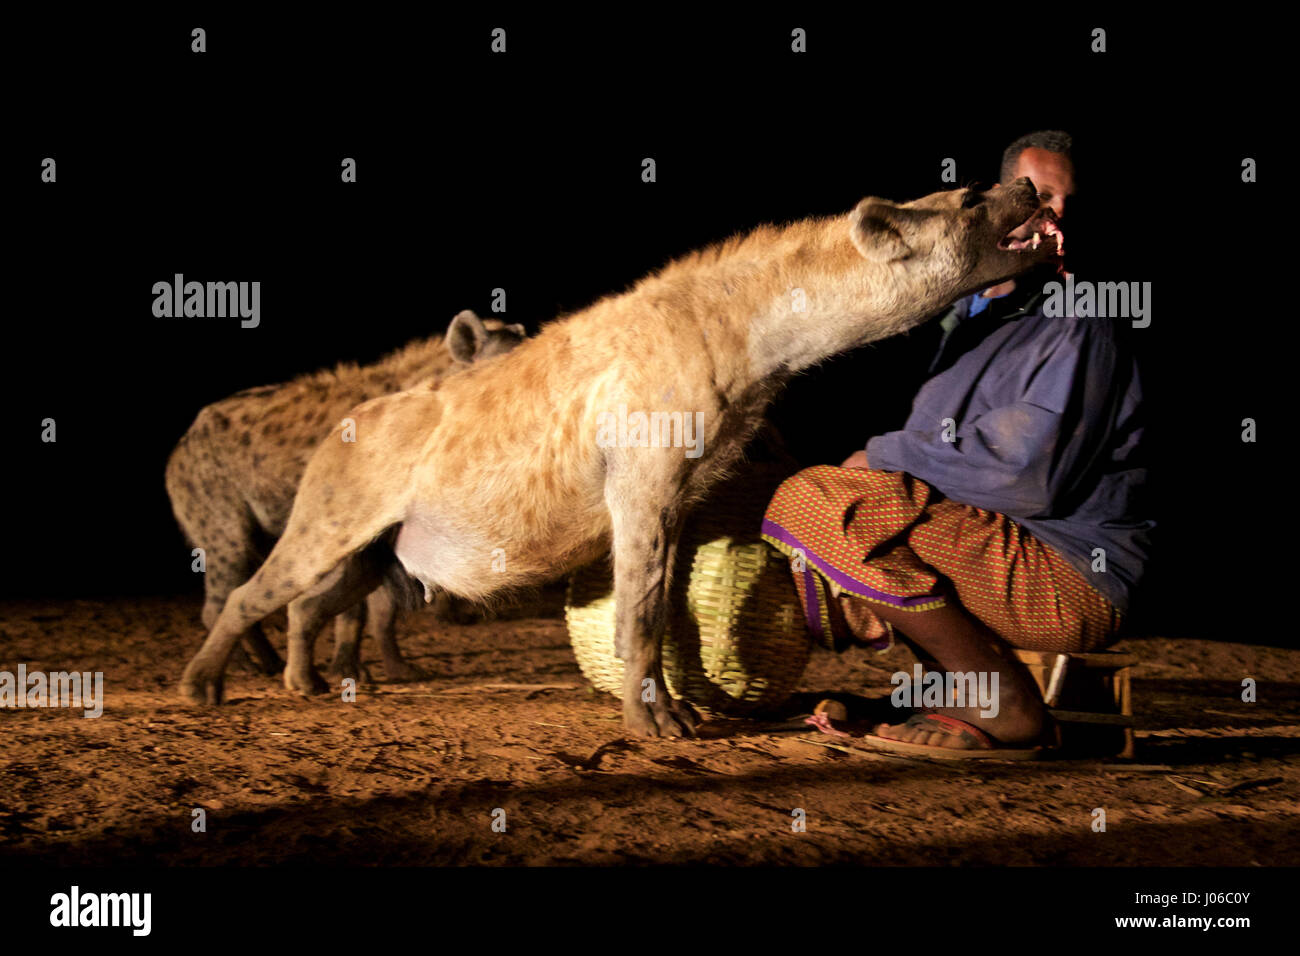 HARAR, Äthiopien: Neue 'Hyäne Man' Abbas Saleh mit einer Hyäne. Treffen Sie die unglaubliche Hyäne Mann von Harar, die nun seinen Titel auf seinen Sohn nach dreißig Jahren, am besten mit Freunden einen Clan dieser fleischfressende Tiere vorbei ist. Bilder zeigen einen jungen Erben die Hyäne Mann Titel nach der jahrhundertealten Tradition seines Volkes vor möglichen Angriffen durch Hyänen ruhig füttern diese wilden Radikalfänger schützen. Er ist völlig frei von jeglicher Art von Angst Sie assoziieren würde, wobei dies in der Nähe Afrikas produktivsten Fleischfresser.  Hyänen sind dafür bekannt, angreifen und töten Menschen, sondern als diese r Stockfoto